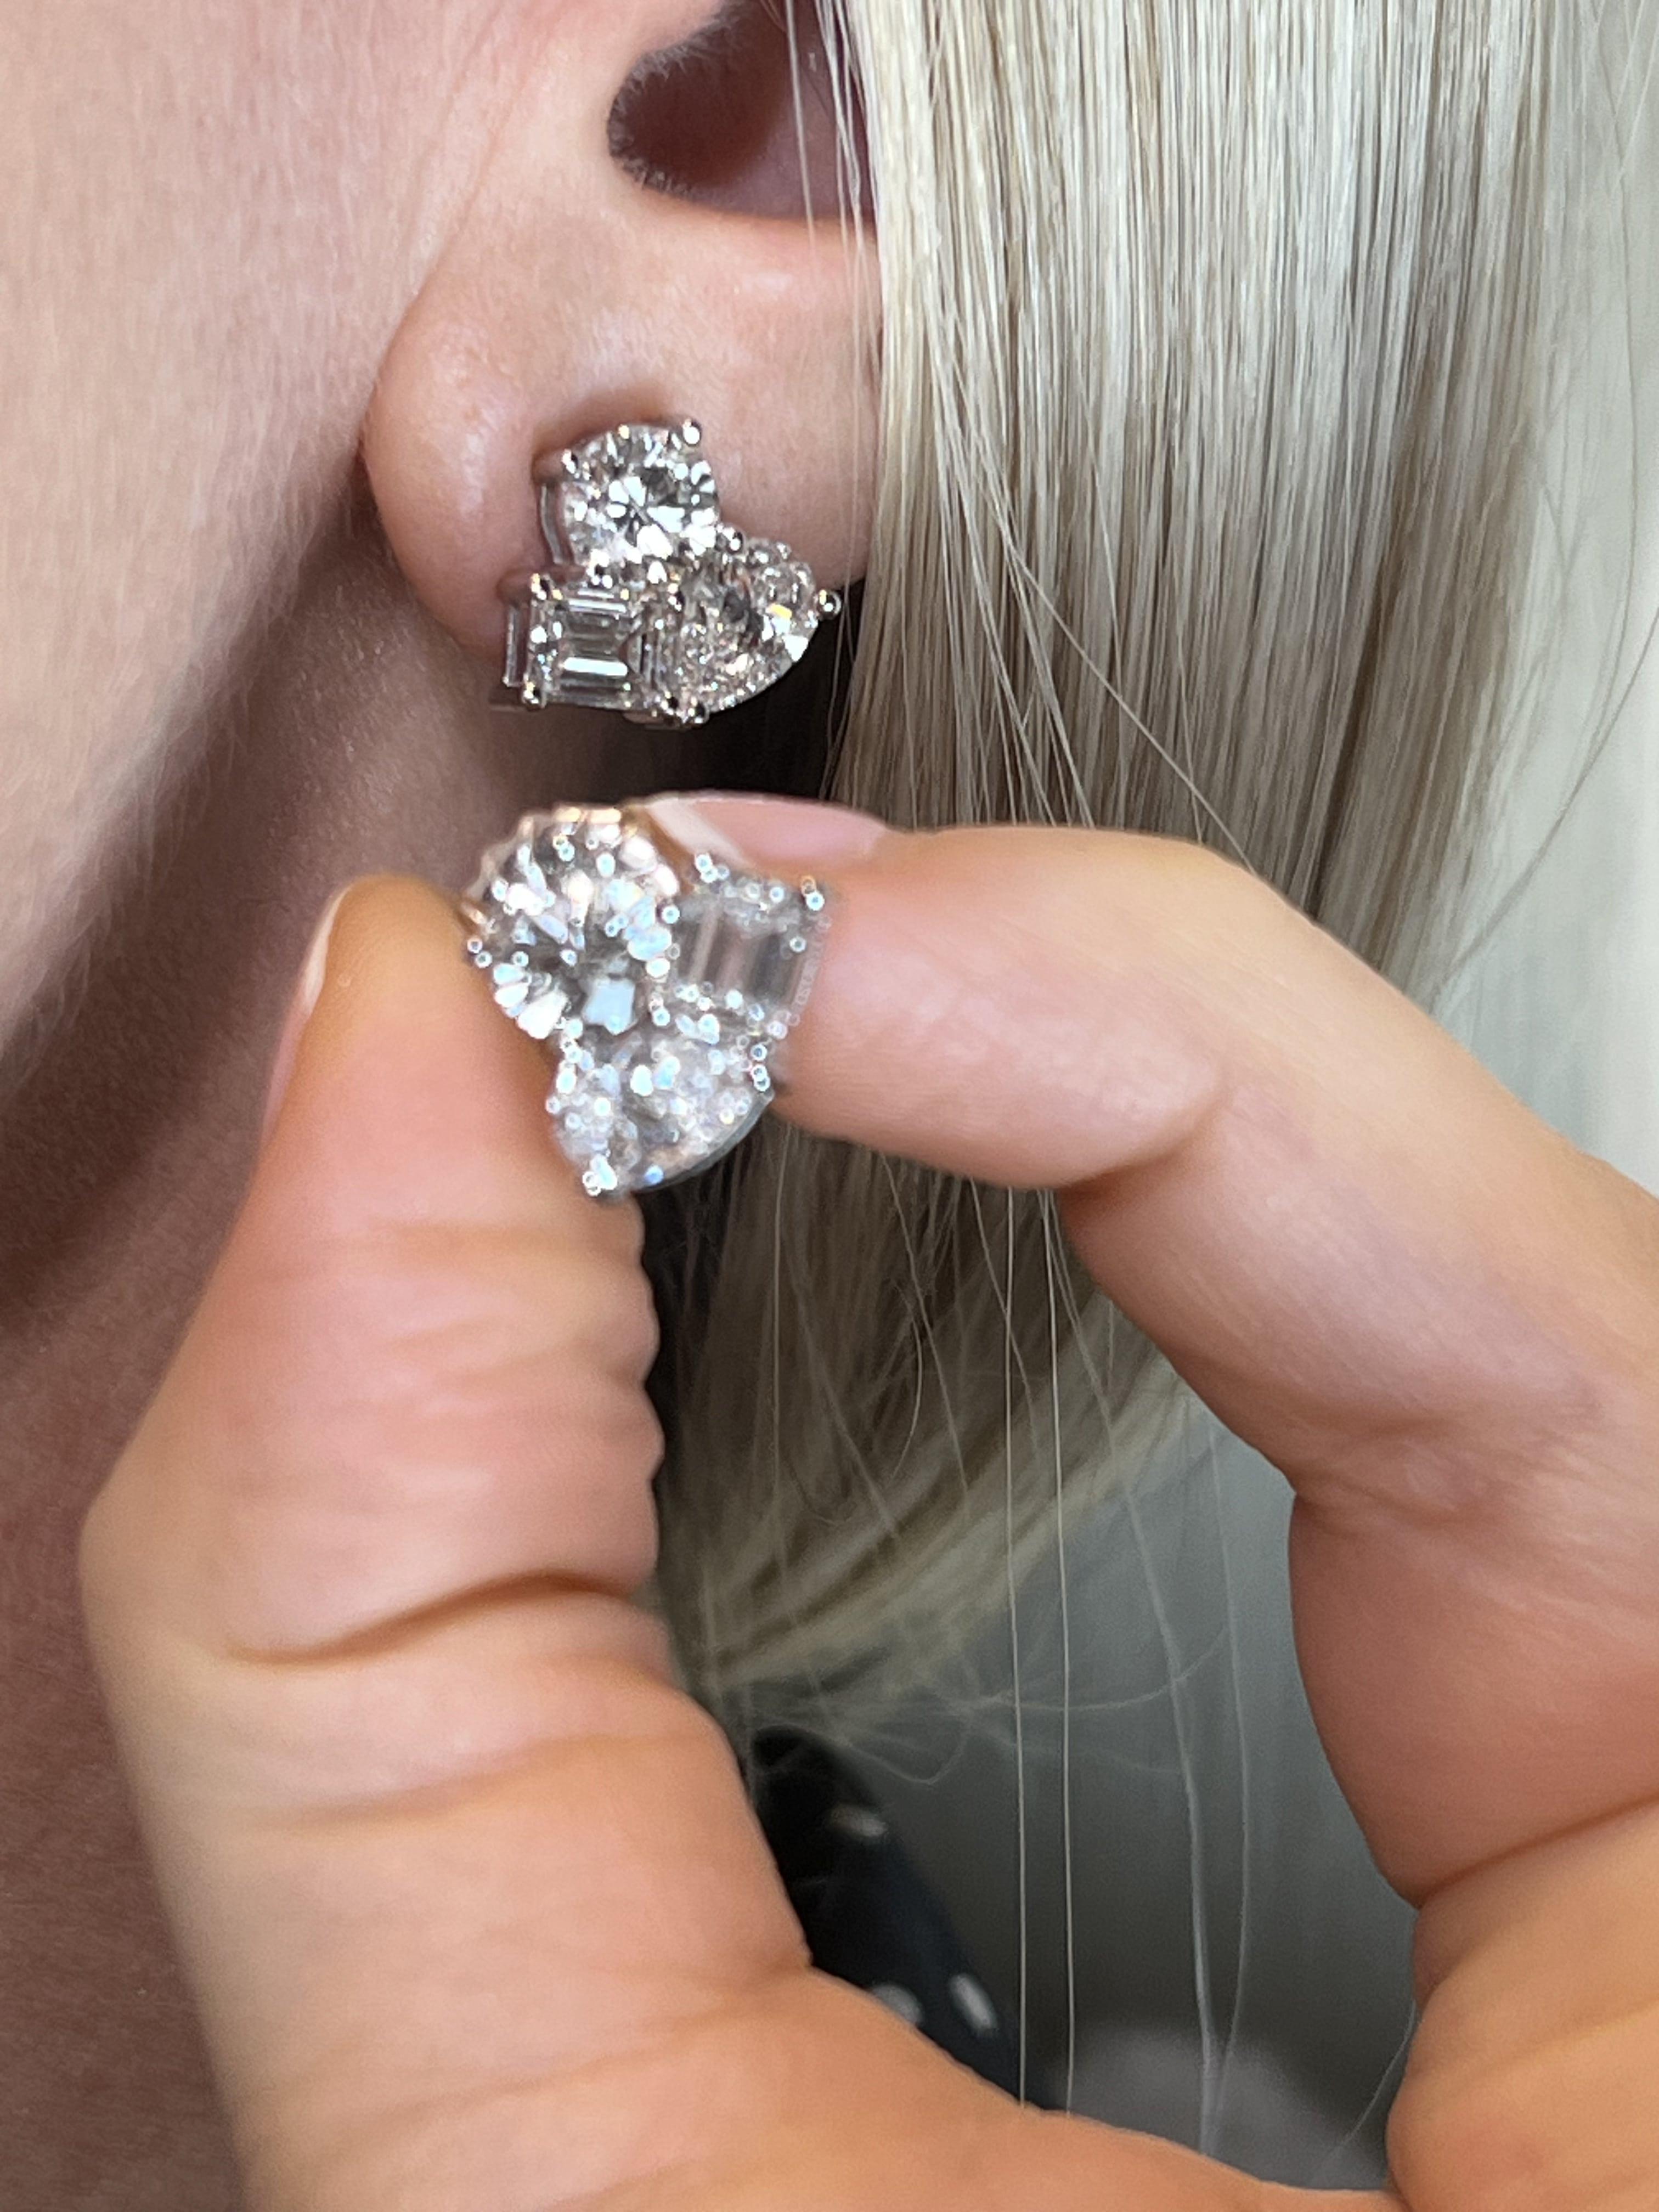 Dakota's Glänzende Diamant-Ohrringe

Informationen zum Ohrring
Diamant Typ : Natürlicher Diamant
Metall : 18k
Metallfarbe : Weißgold
Diamant Karat Gewicht : 1.02ttcw
Diamant Farbe-Klarheit : VS1
Diamant Farbe : G
Abmessungen: 6,31- 6,27 x 4,10 mm